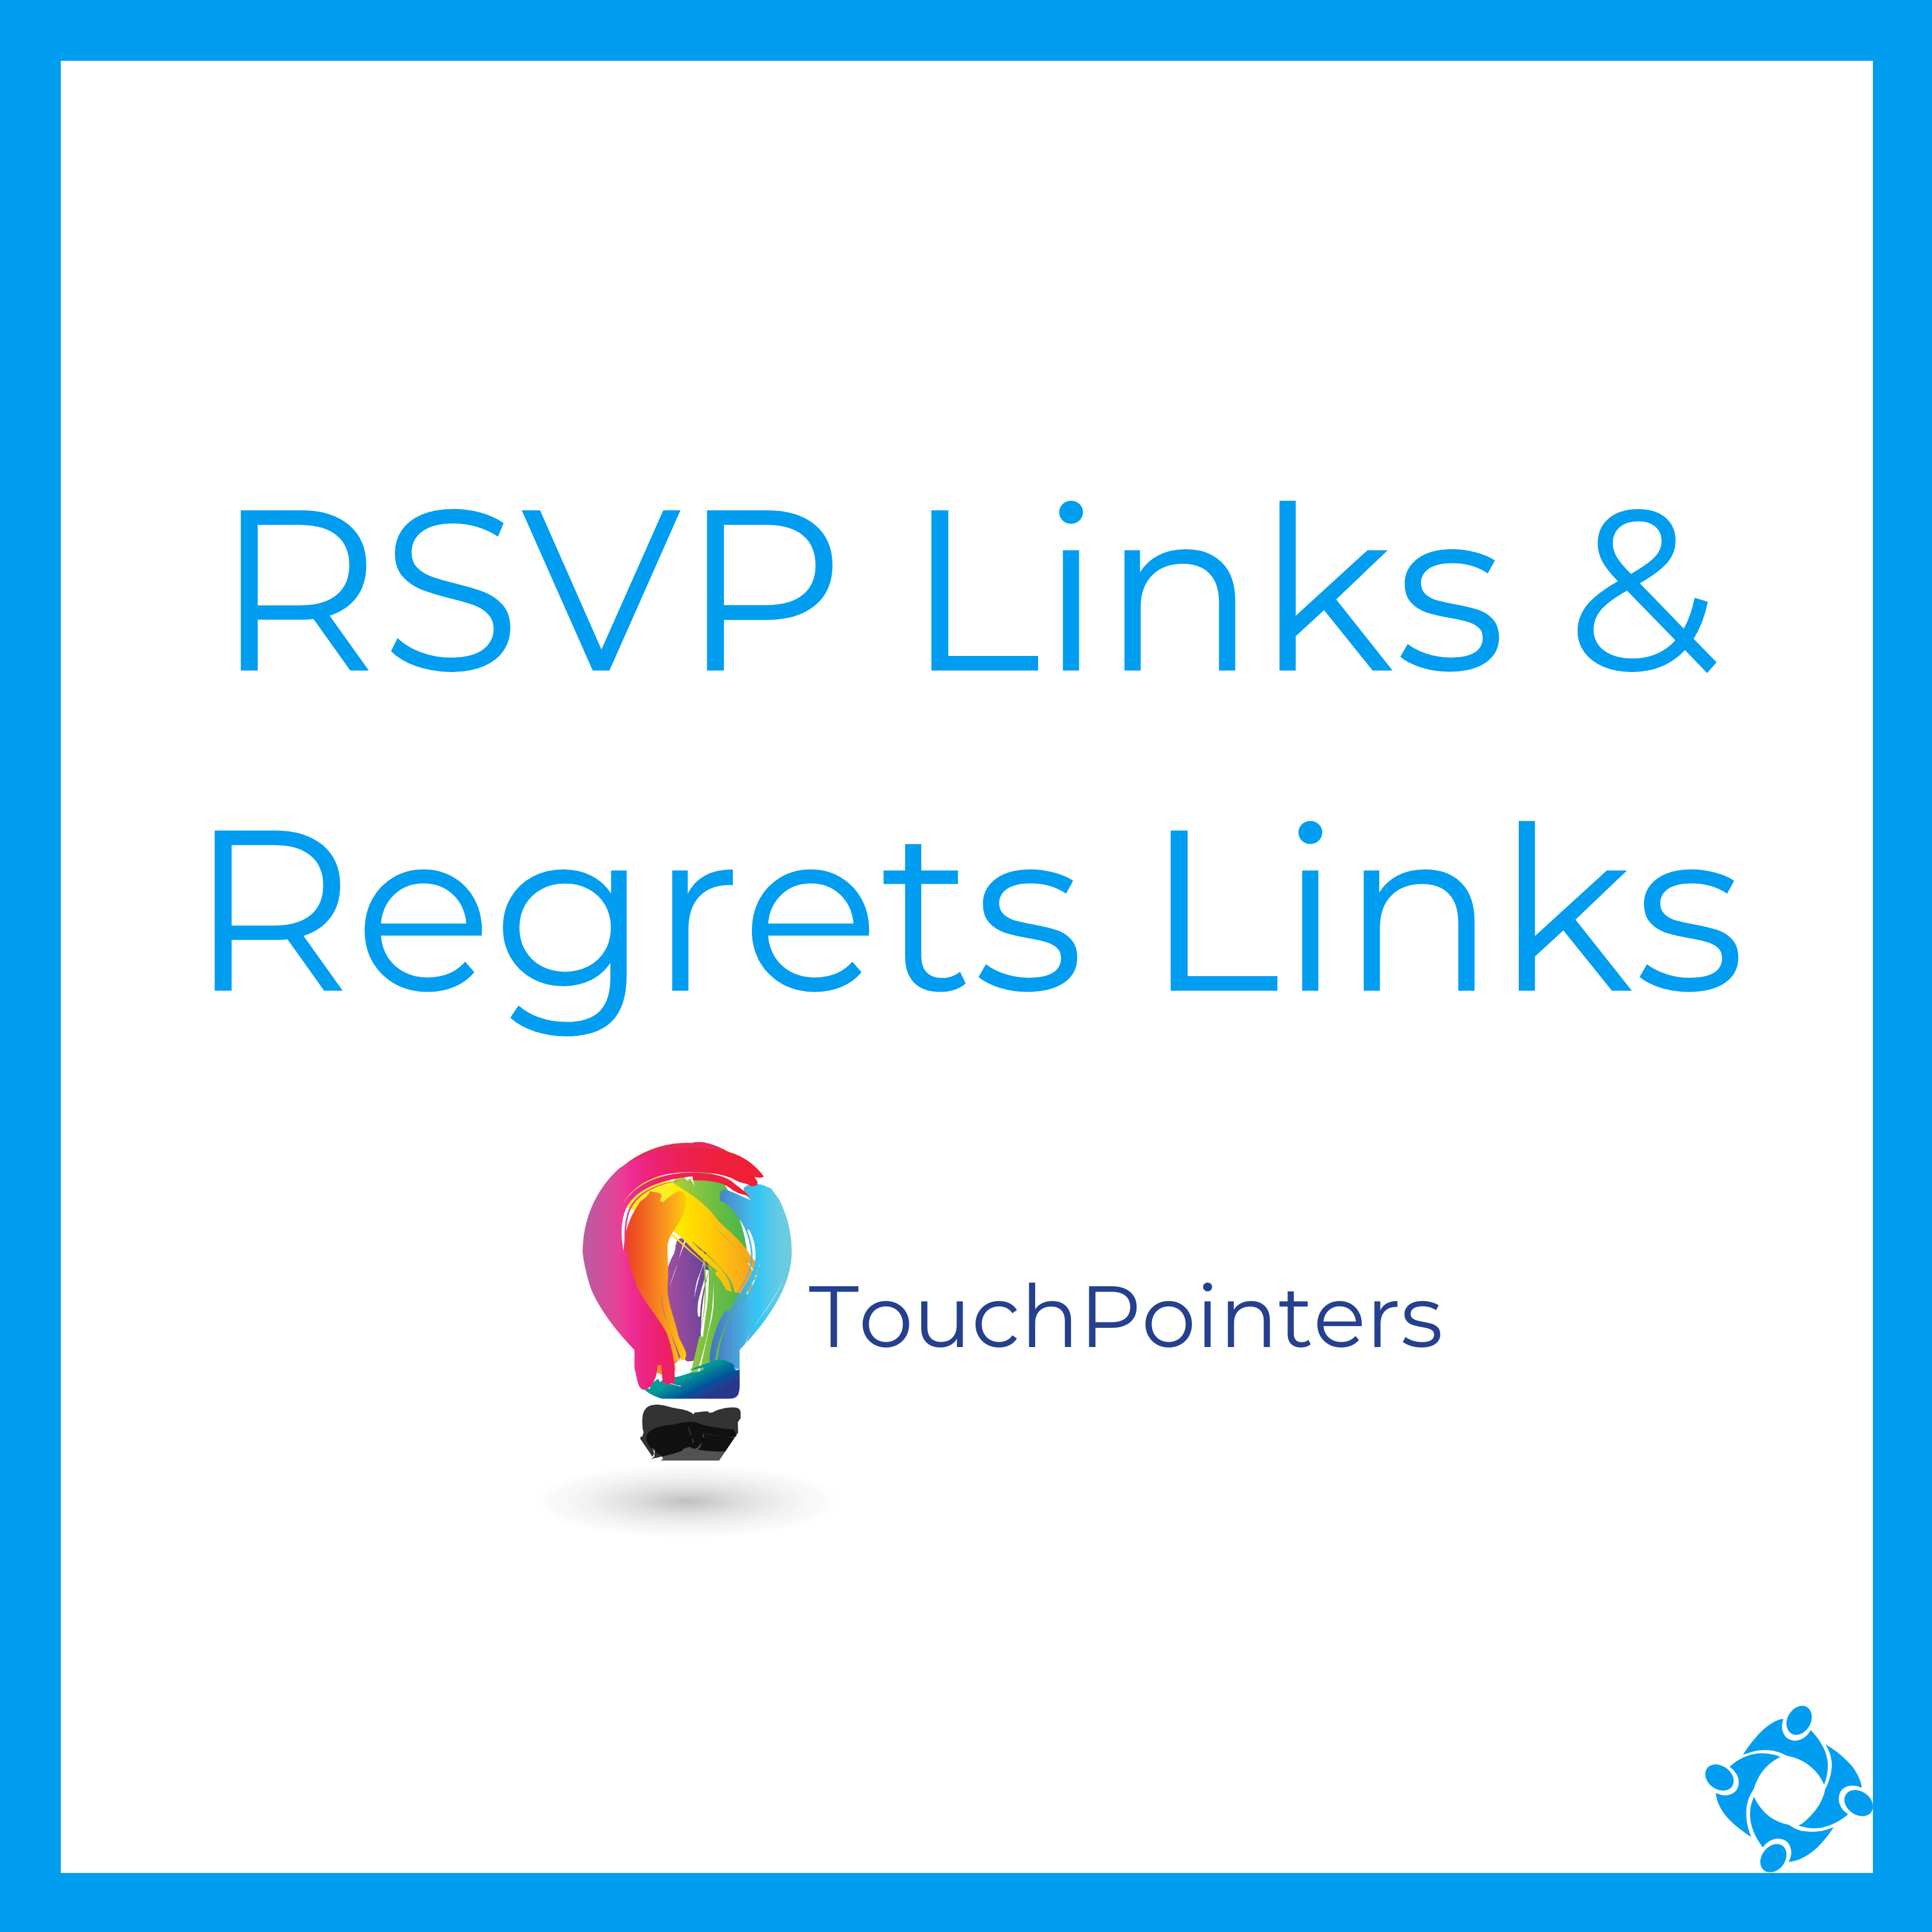 RSVP Links & Regrets Links